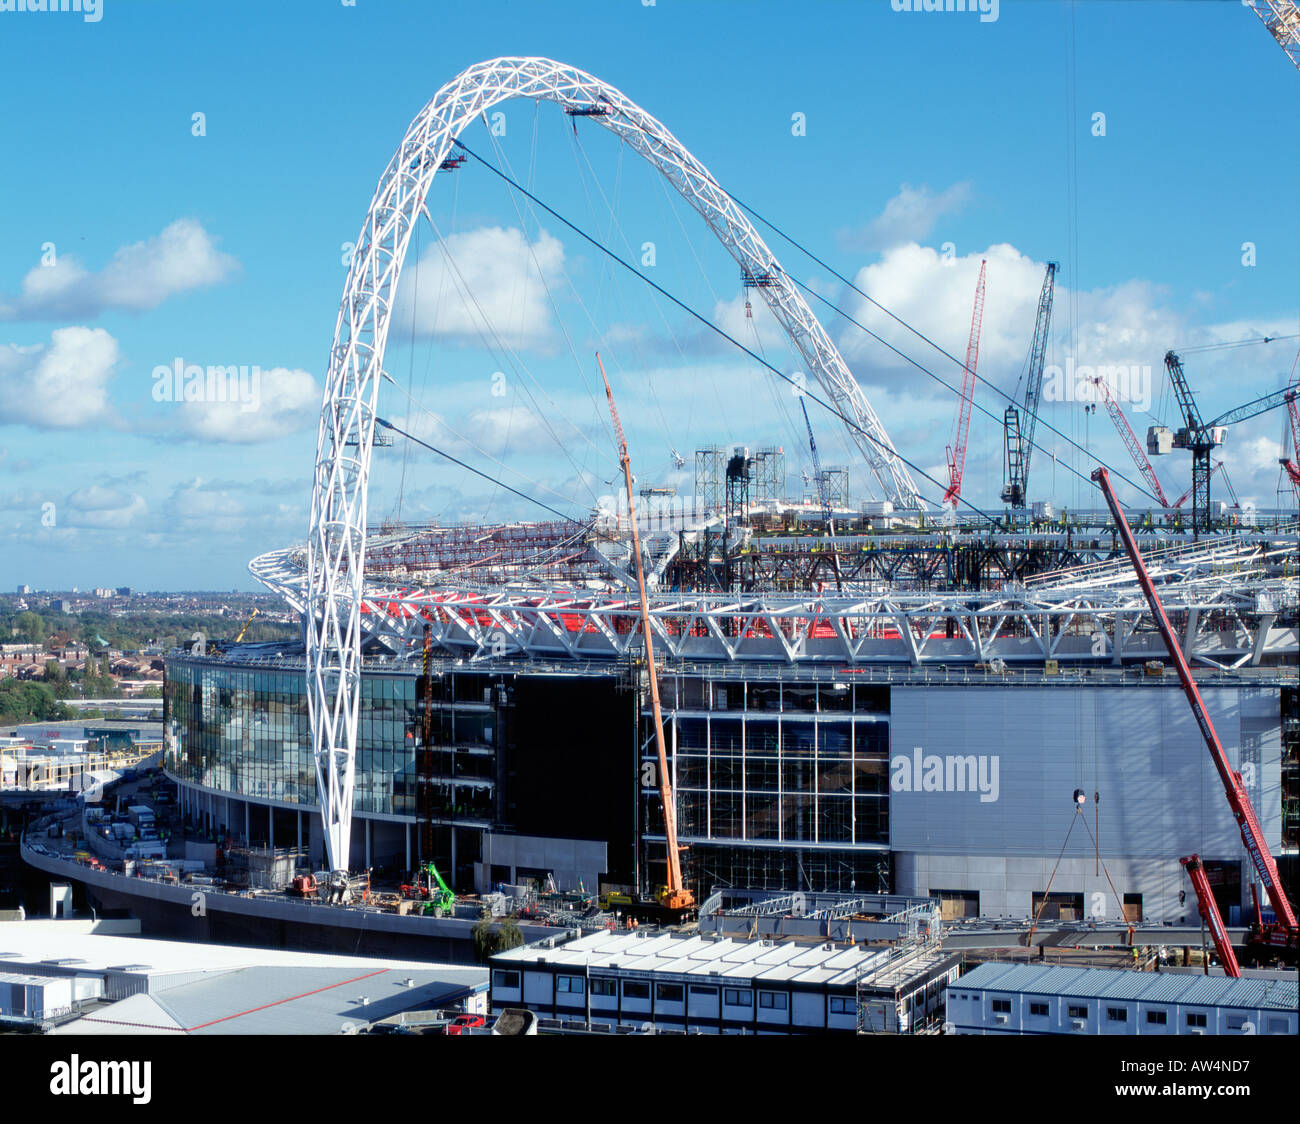 Le stade de Wembley en construction Novembre 2005 Vue aérienne Banque D'Images